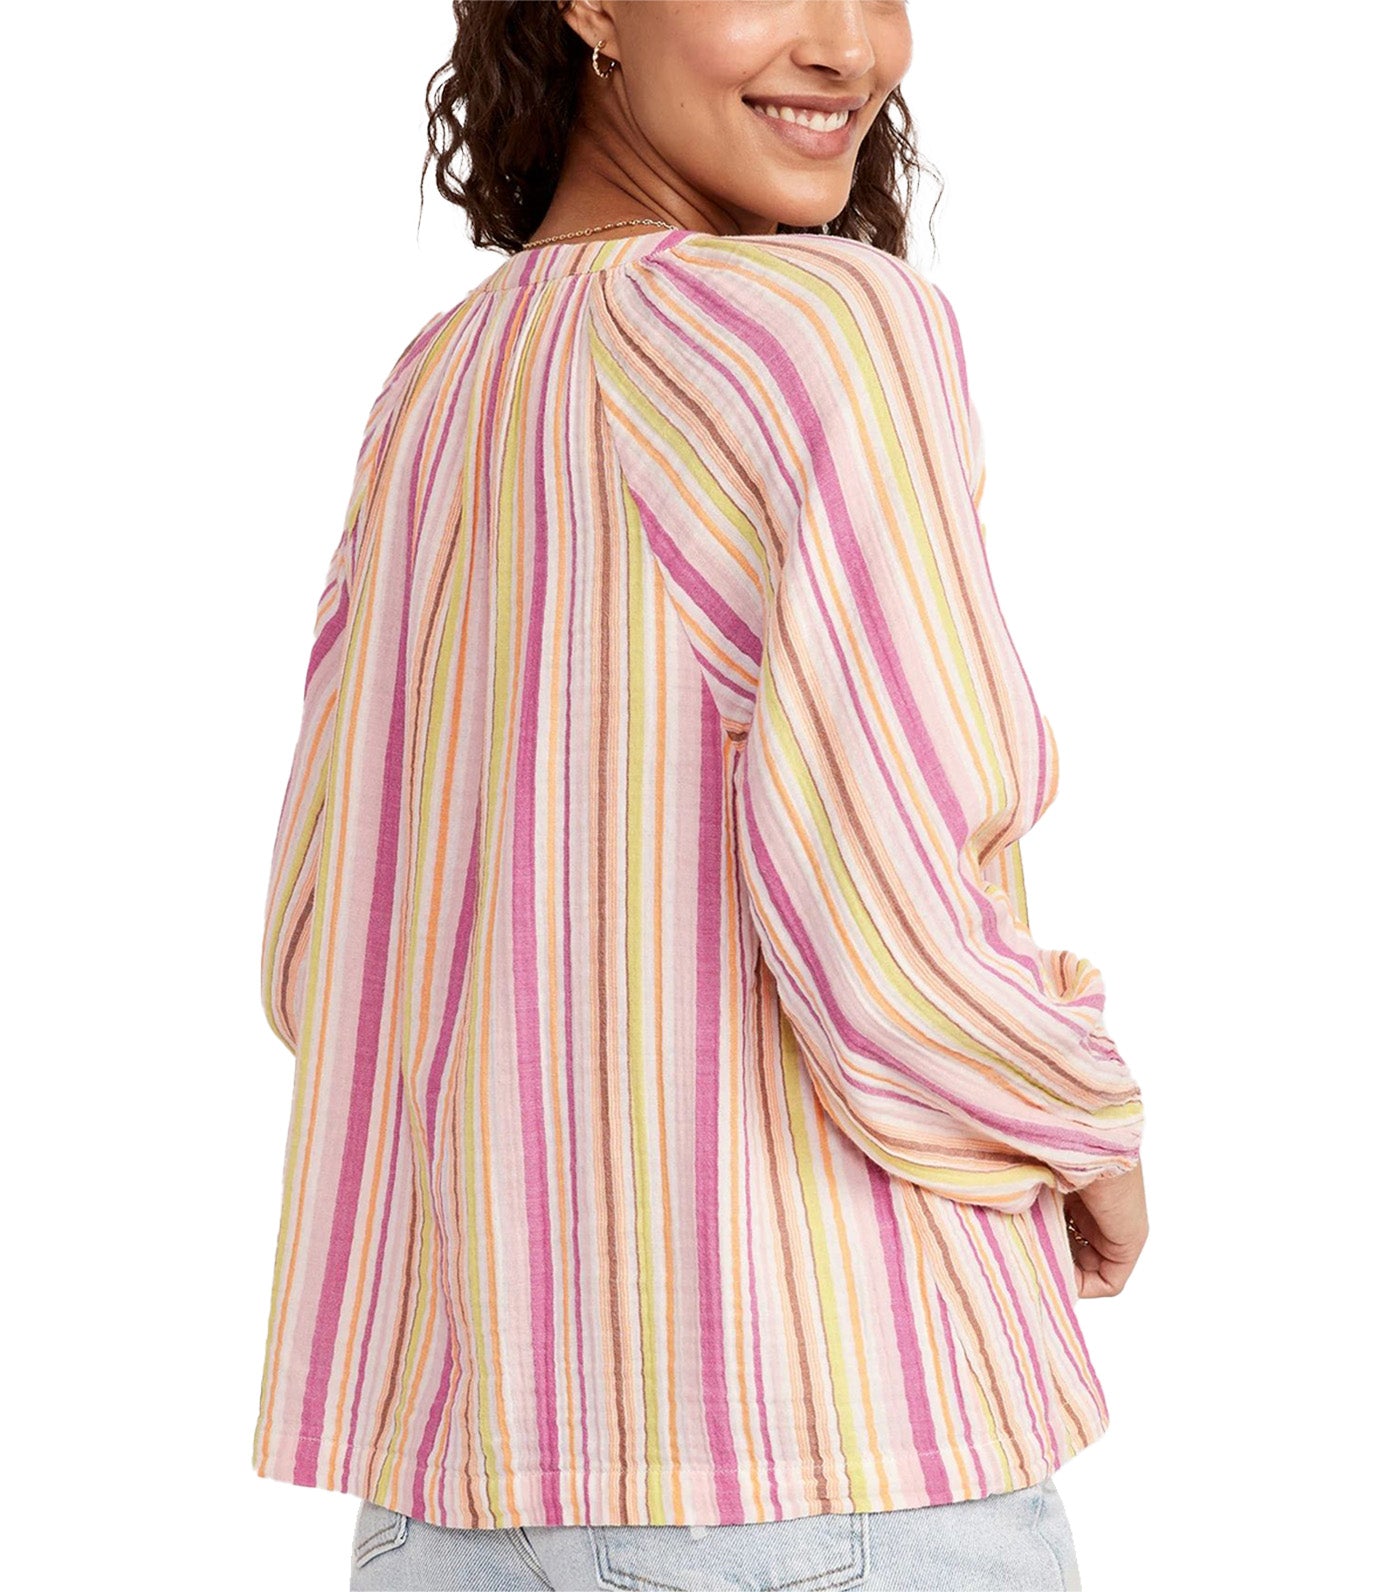 Long-Sleeve Striped Split-Neck Top for Women Pink Multi Stripe